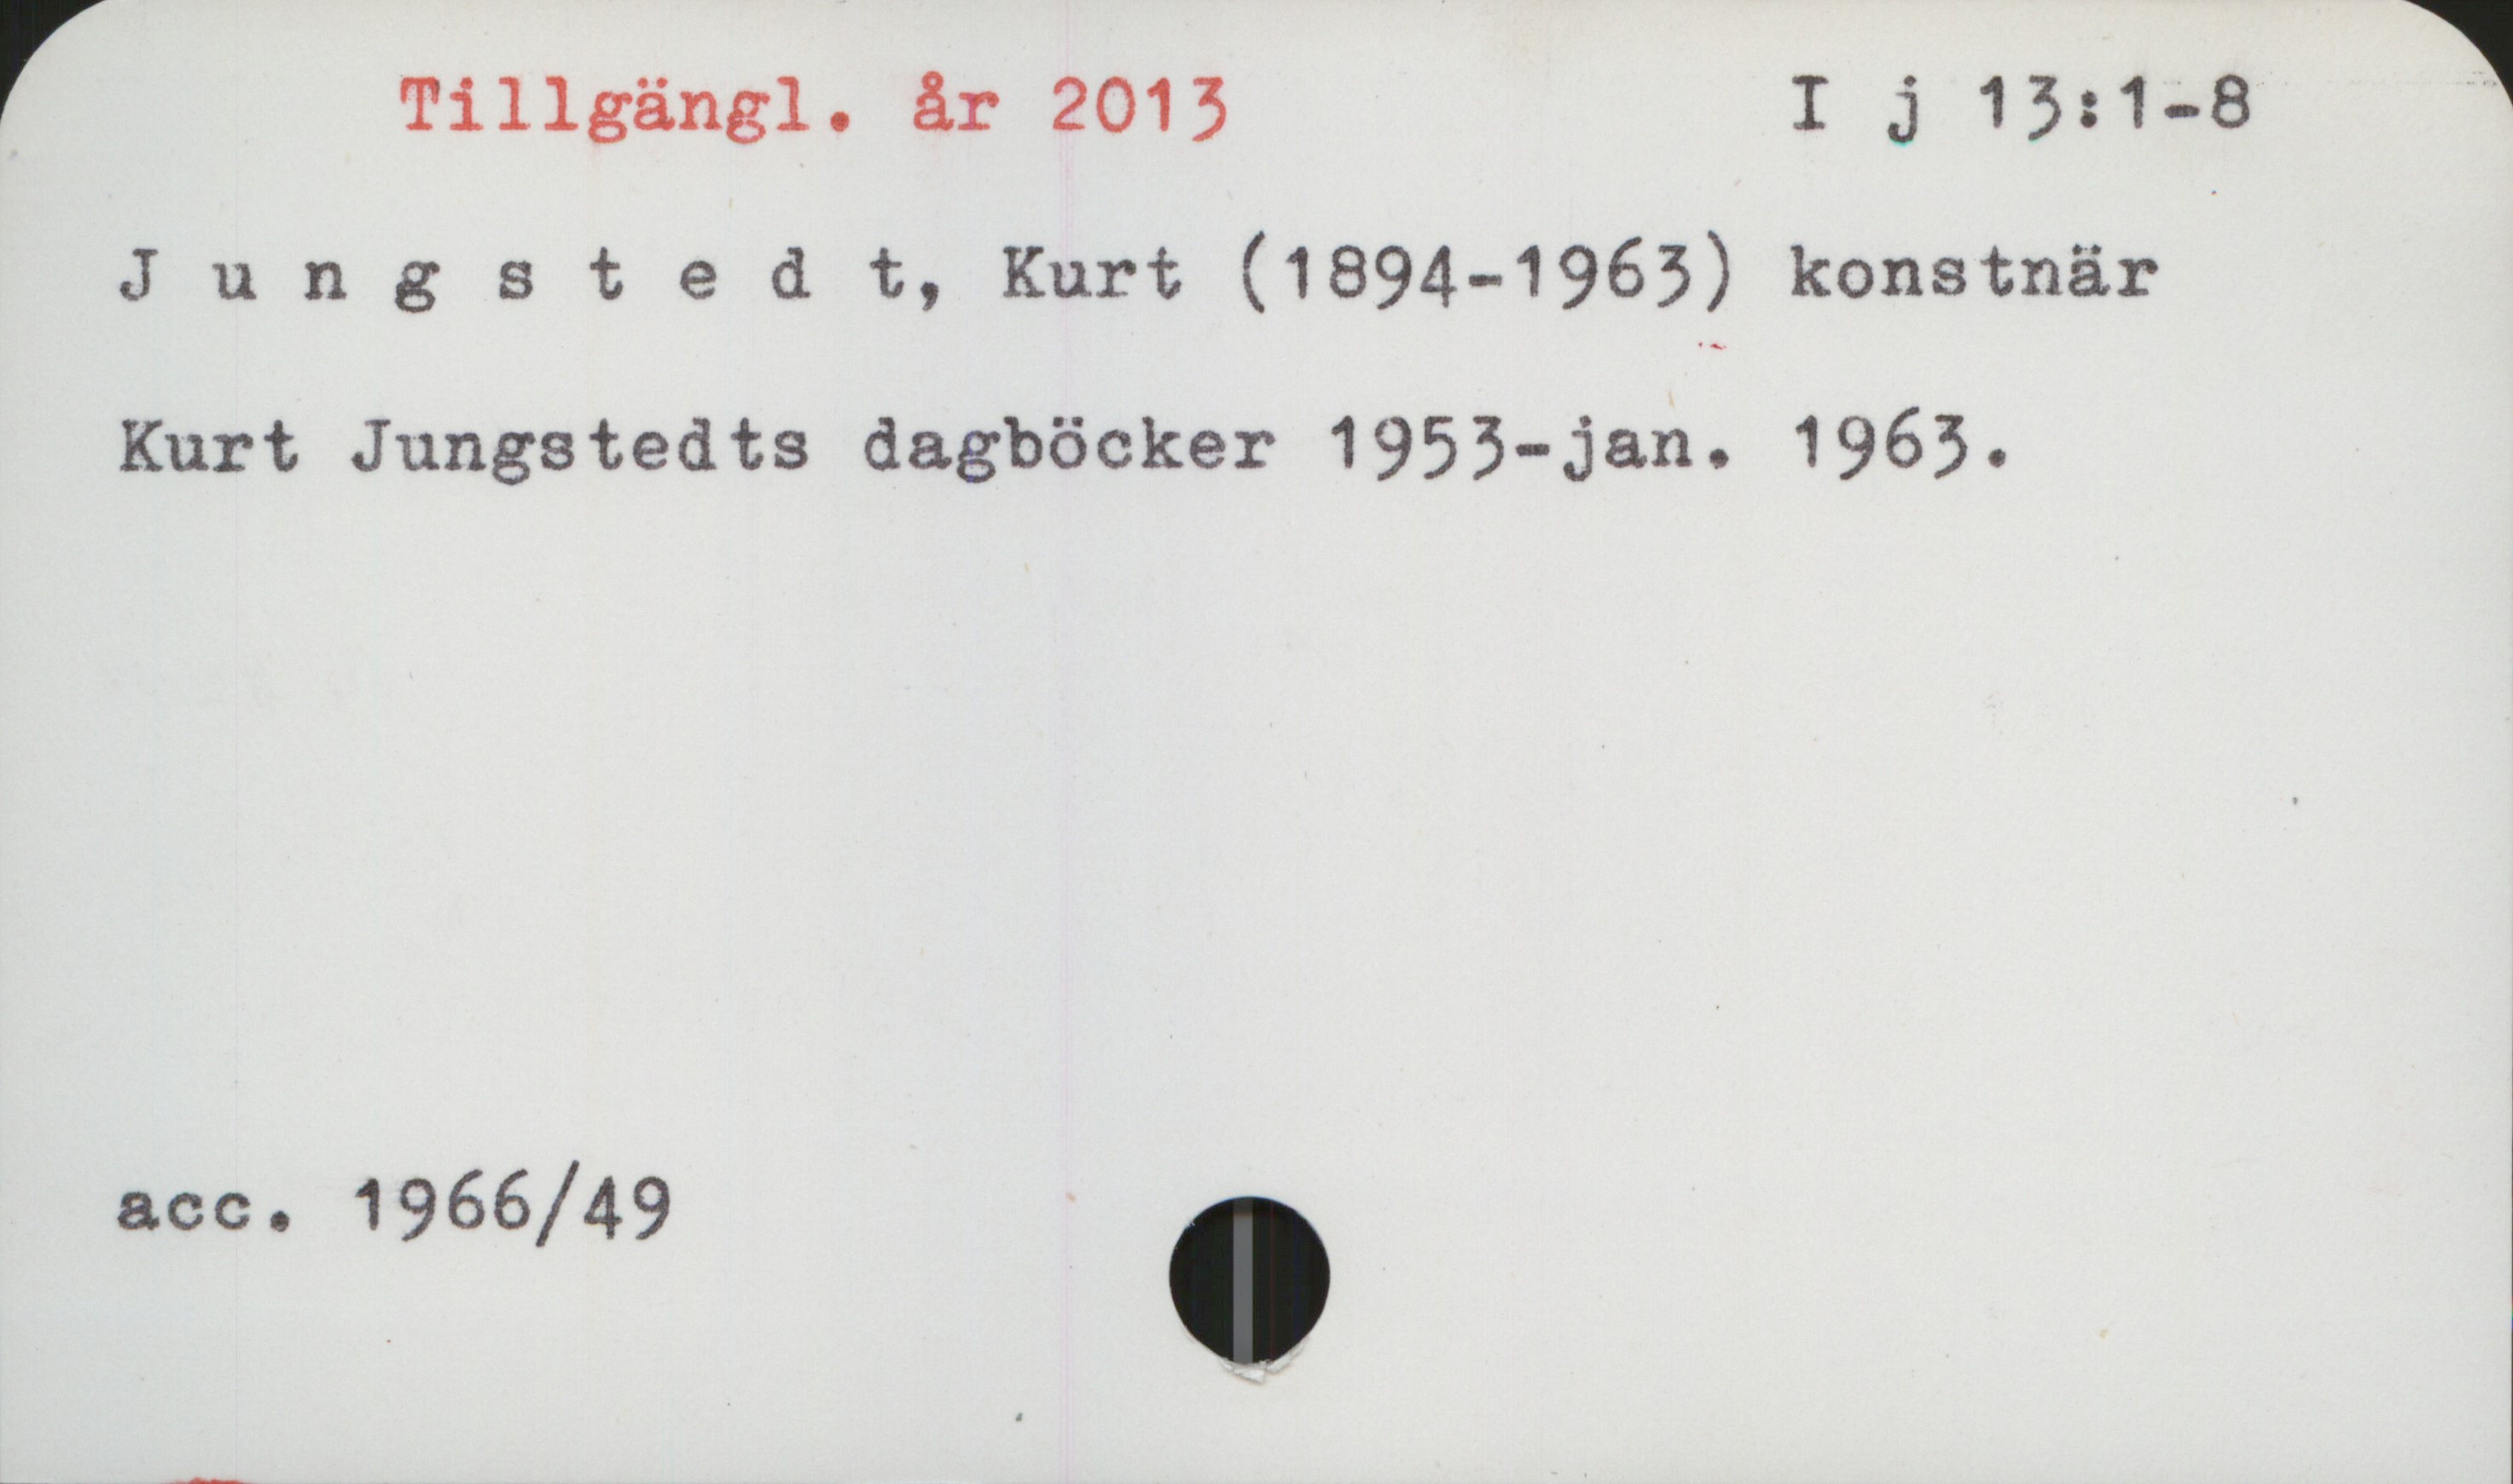 Jungstedt, Kurt (1894-1963) Tillgängl. år 2013
                                                                                          I j 13:1-8

Jungstedt, Kurt (1894-1963), konstnär

Kurt Jungstedts dagböcker 1953-jan. 1963






Acc. 1966/49